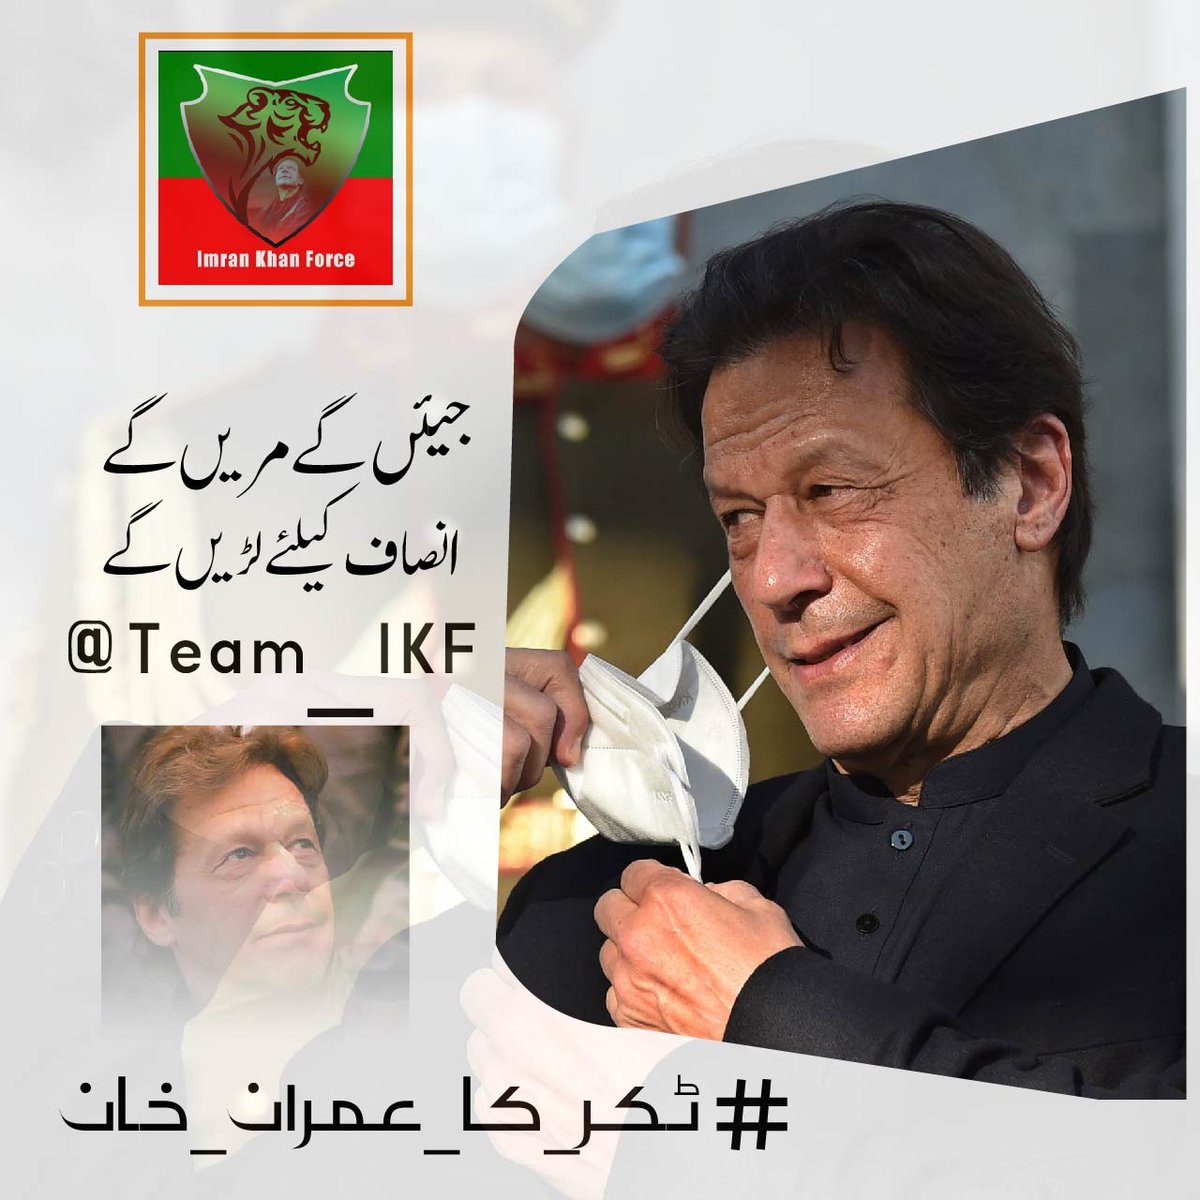 عمران خان اس ملک کے ہر طبقے کے لیے جدوجہد کر رہا ہے #ٹکر_کا_عمران_خان @Team_IKF @11ptiM